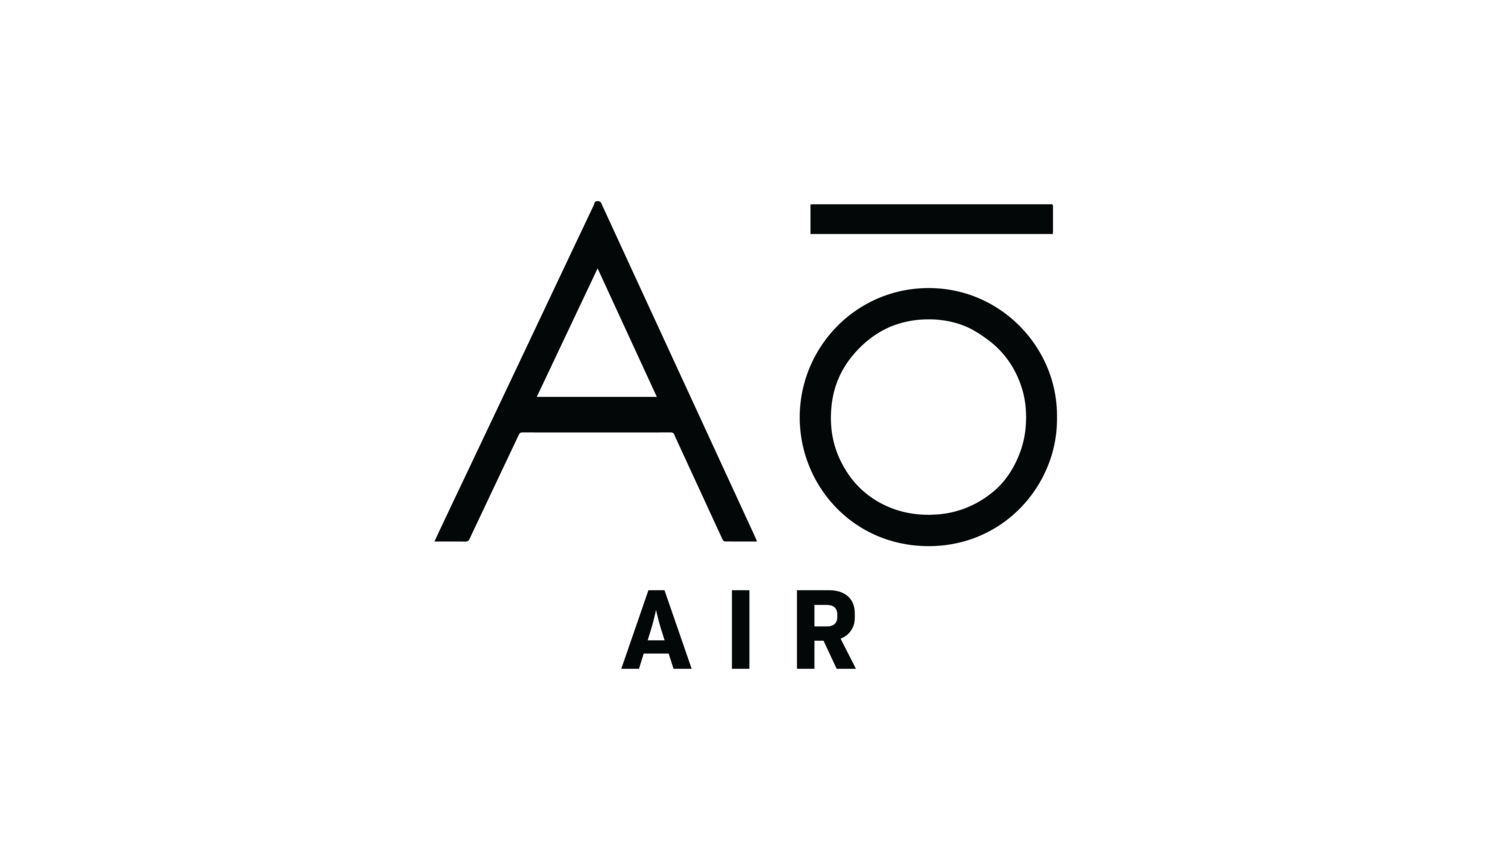 Aō Air